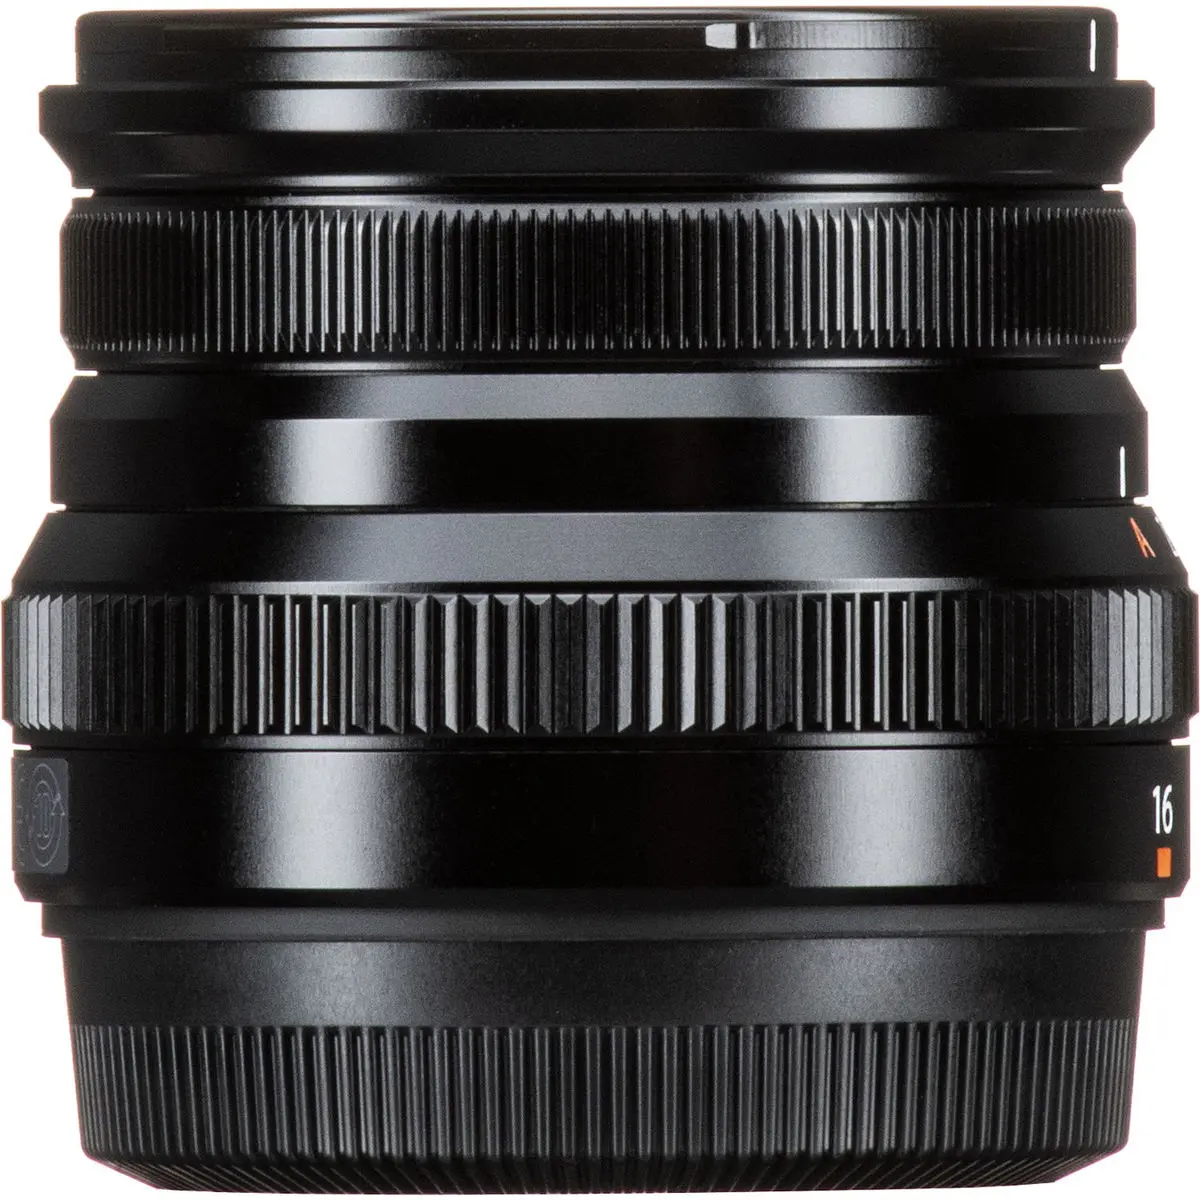 10. FUJINON XF 16mm F2.8 R WR Black Lens